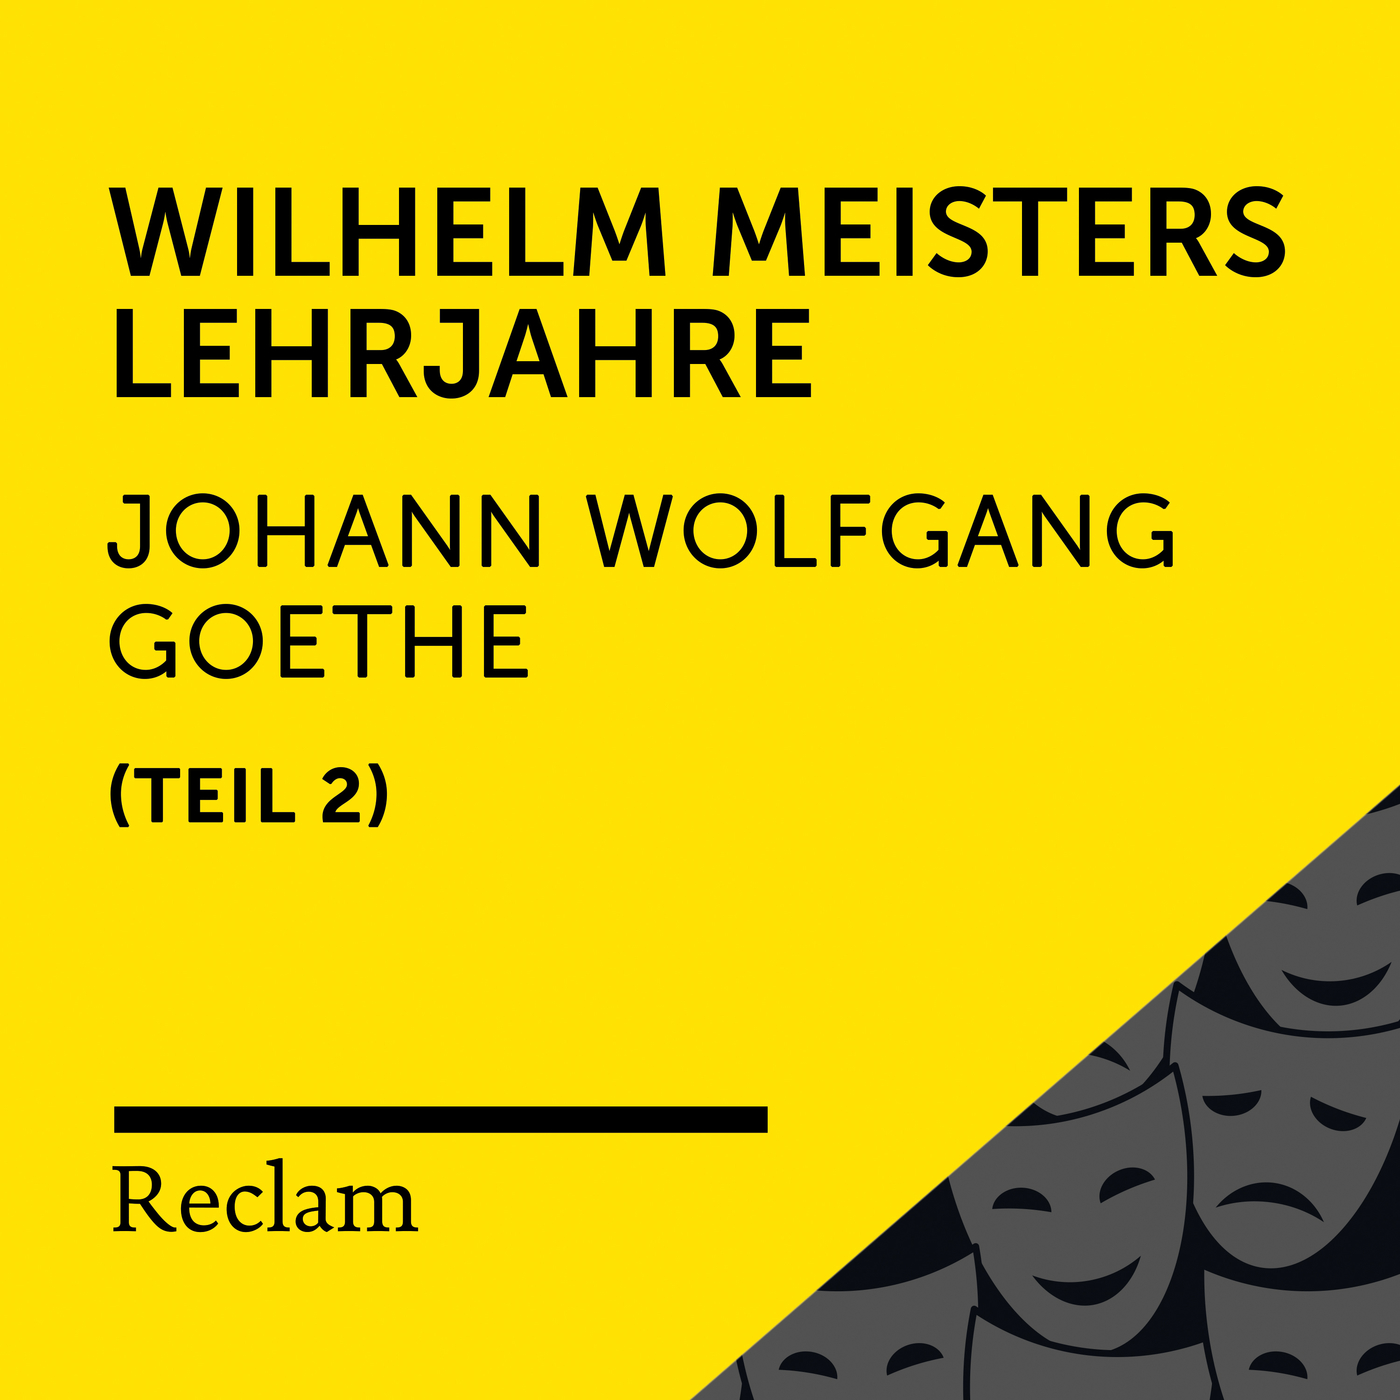 Wilhelm Meisters Lehrjahre, Buch 4 (Kapitel XVIII, Teil 04)